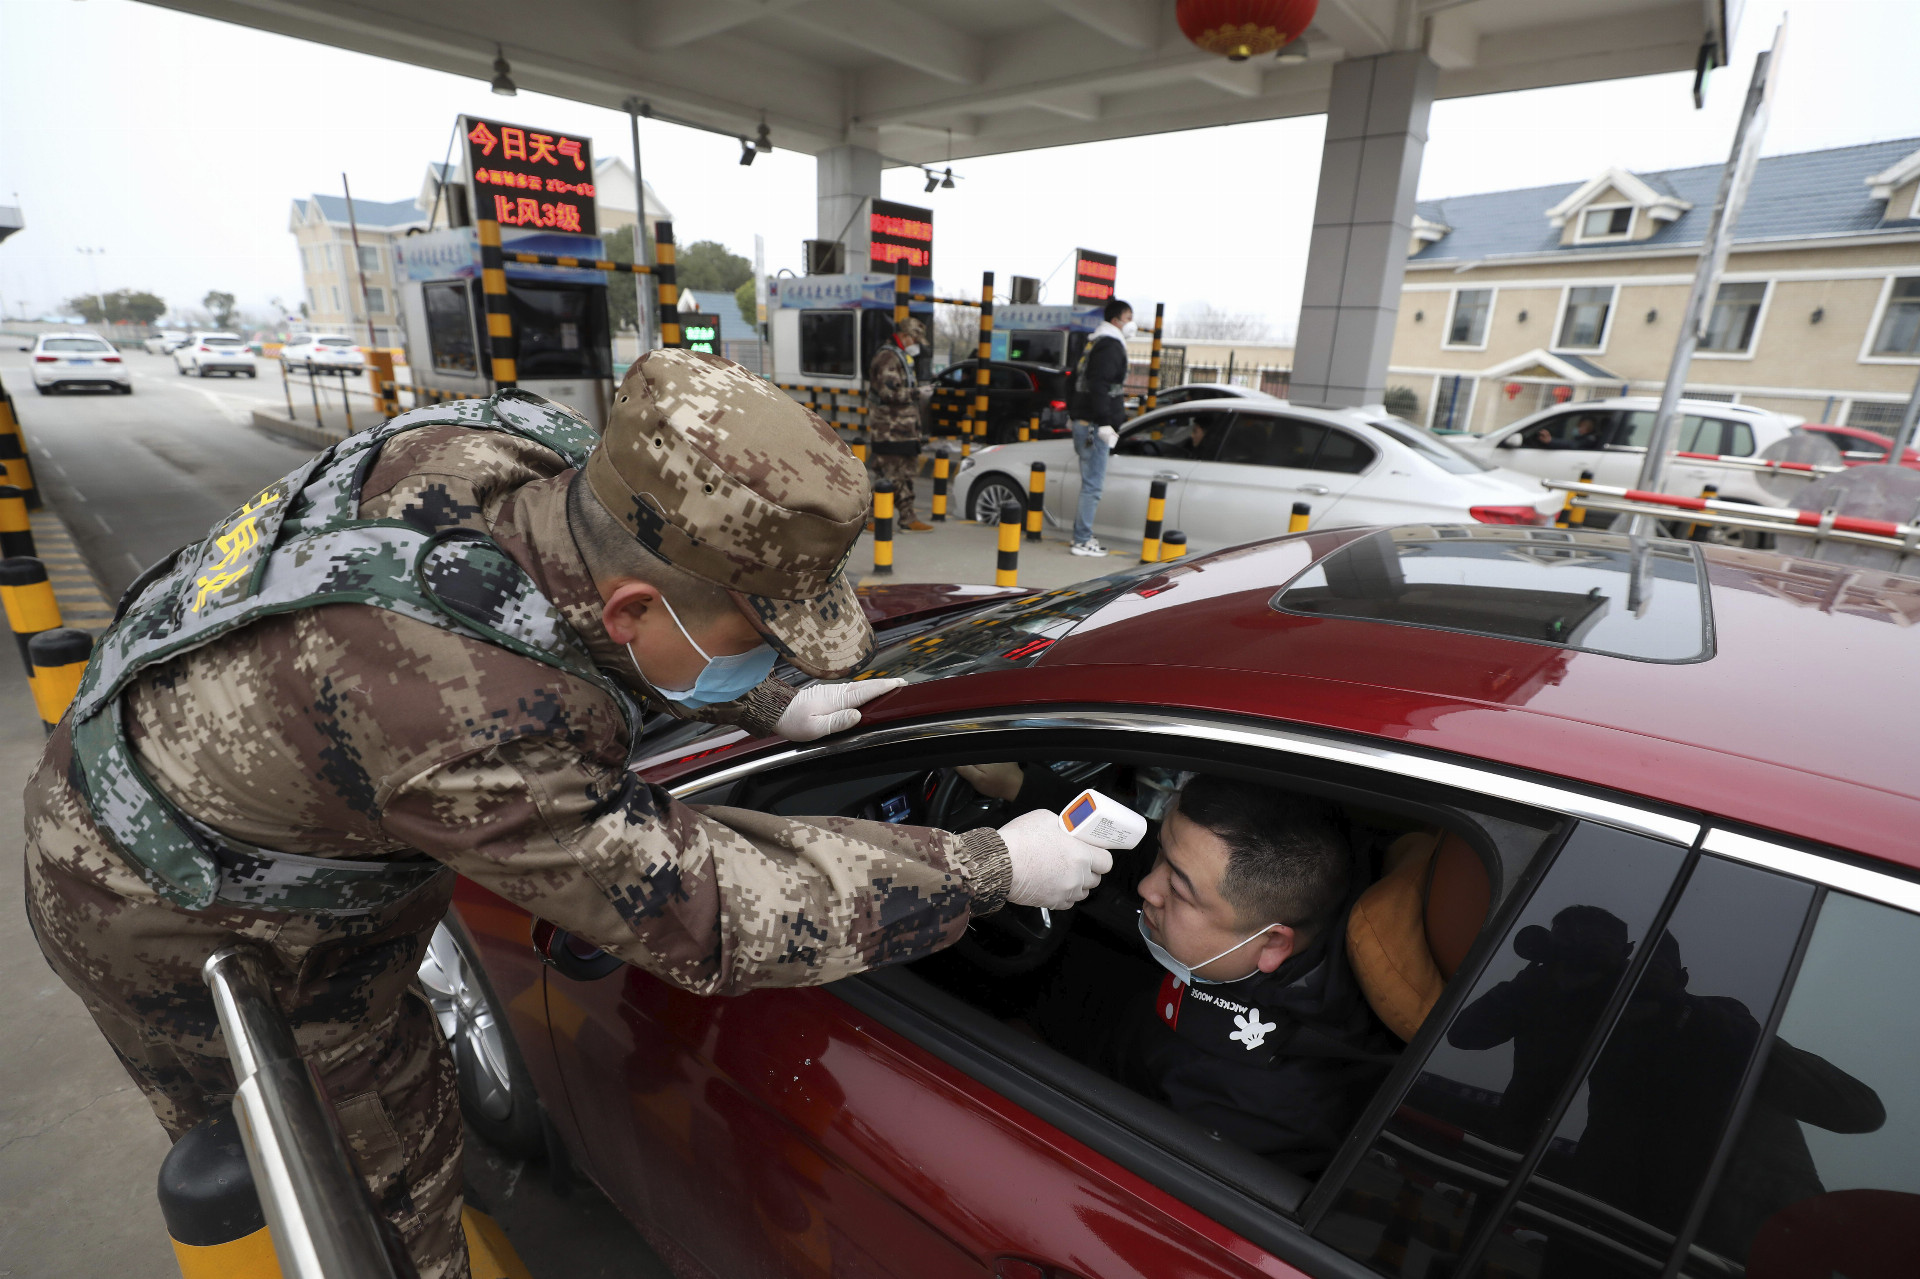 Vojak kontroluje vodičovi teplotu digitálnym teplomerom na kontrolnom stanovišti v čínskom meste Wu-chan.